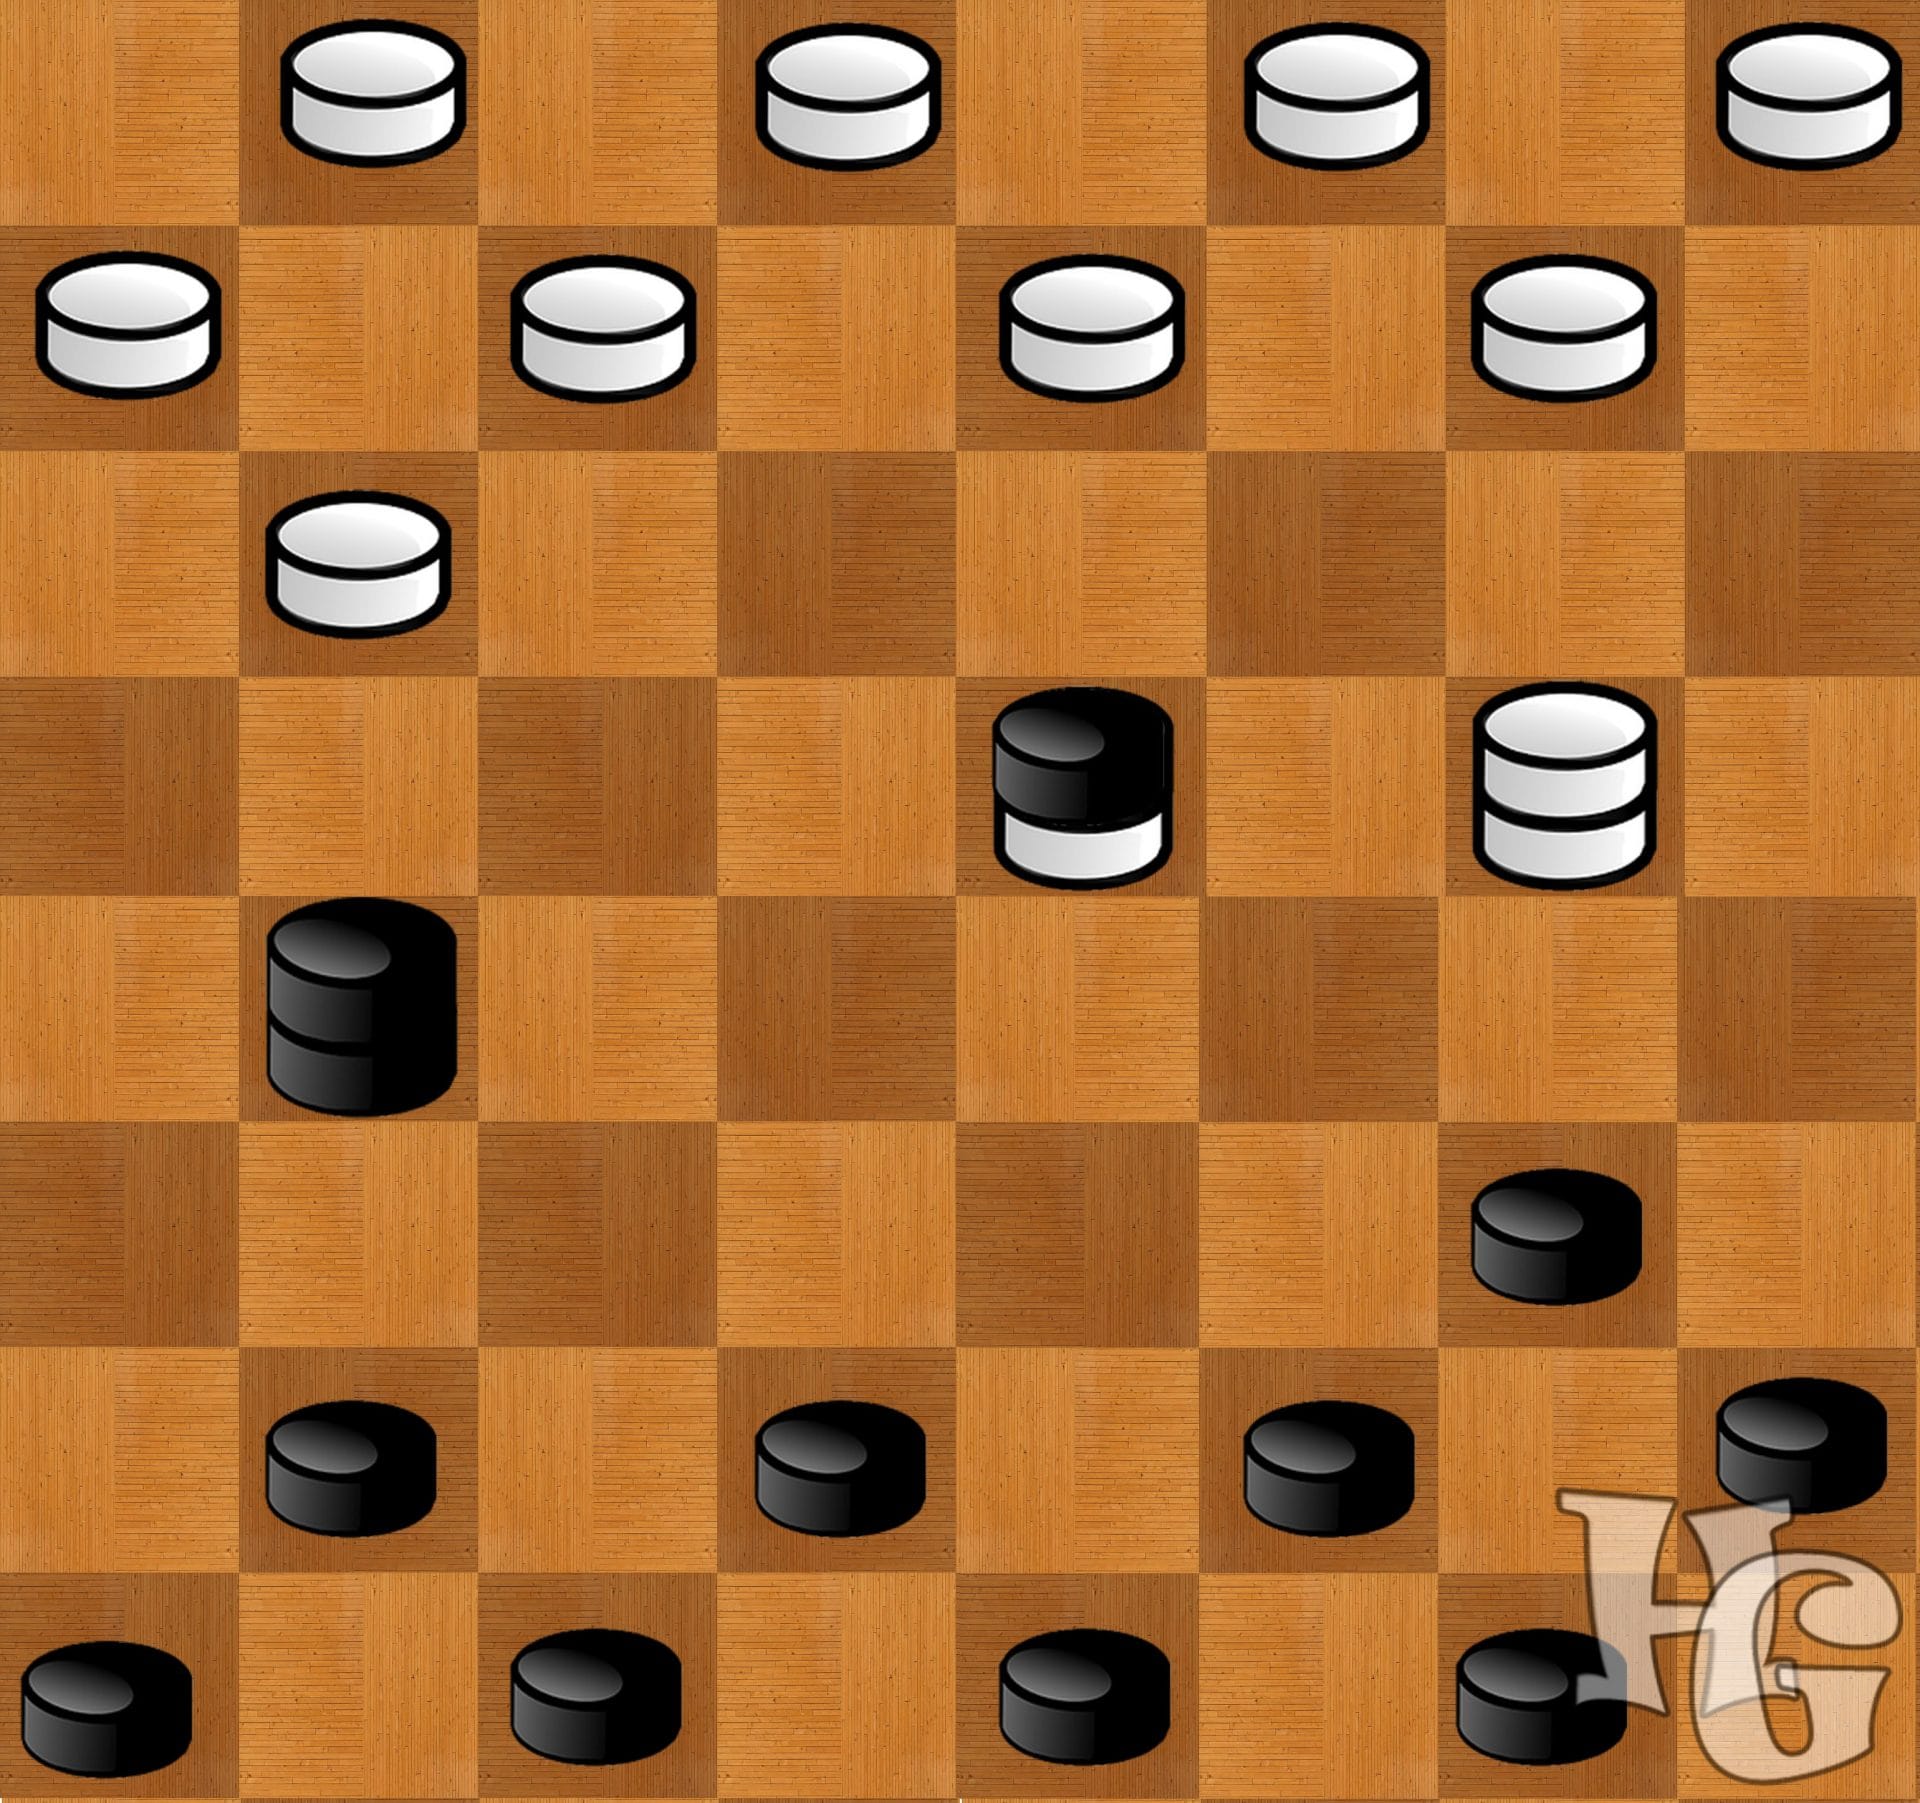 6 игра шашки